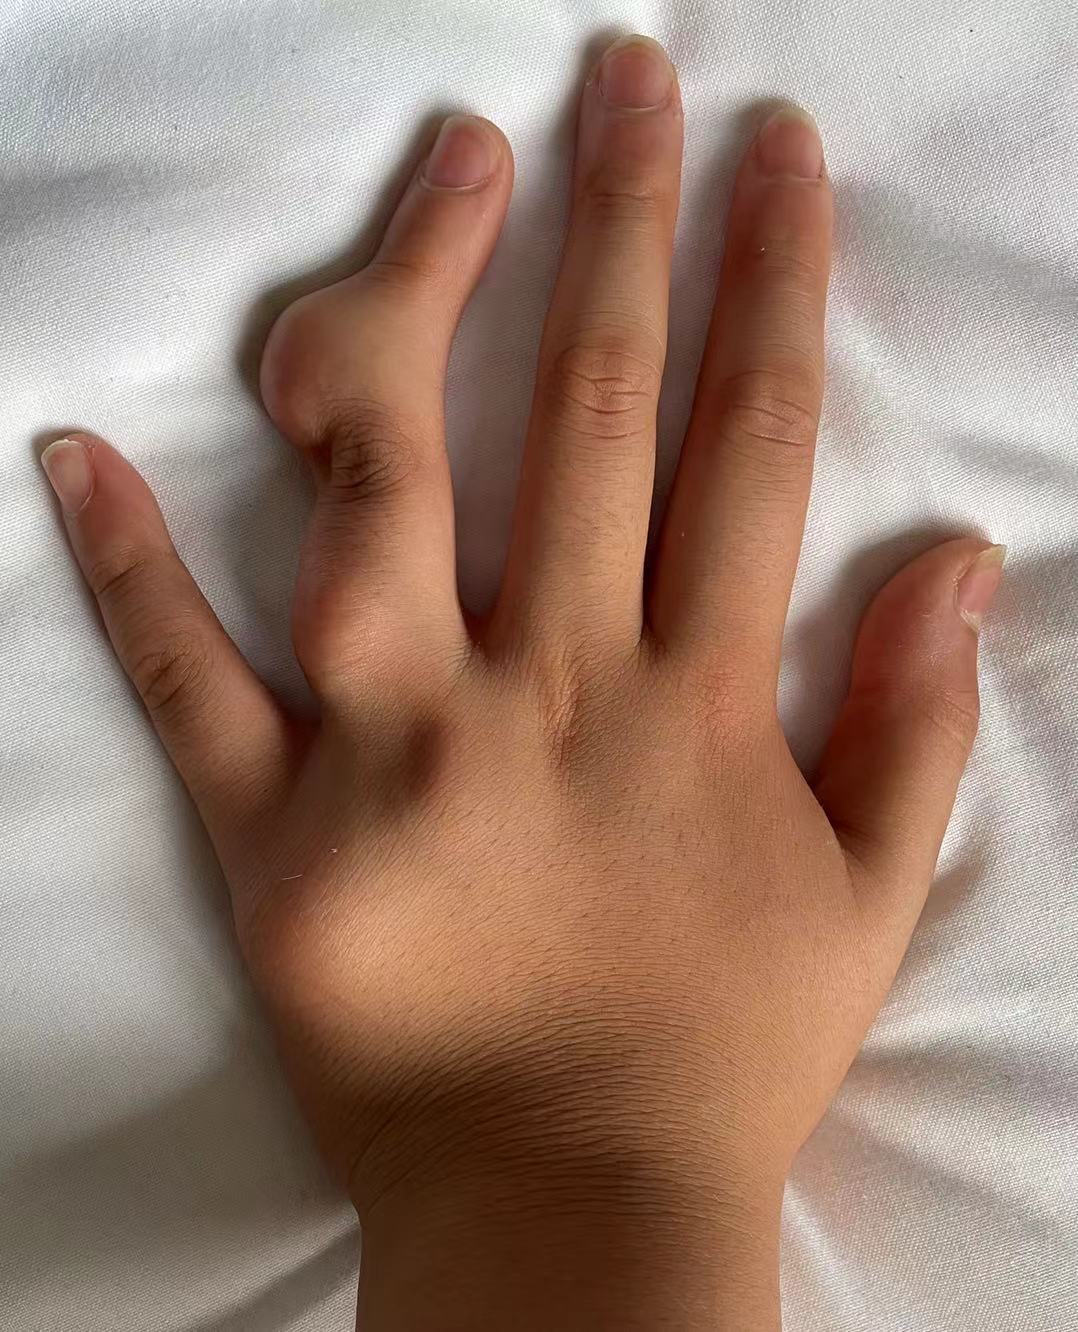 手指软骨瘤图片